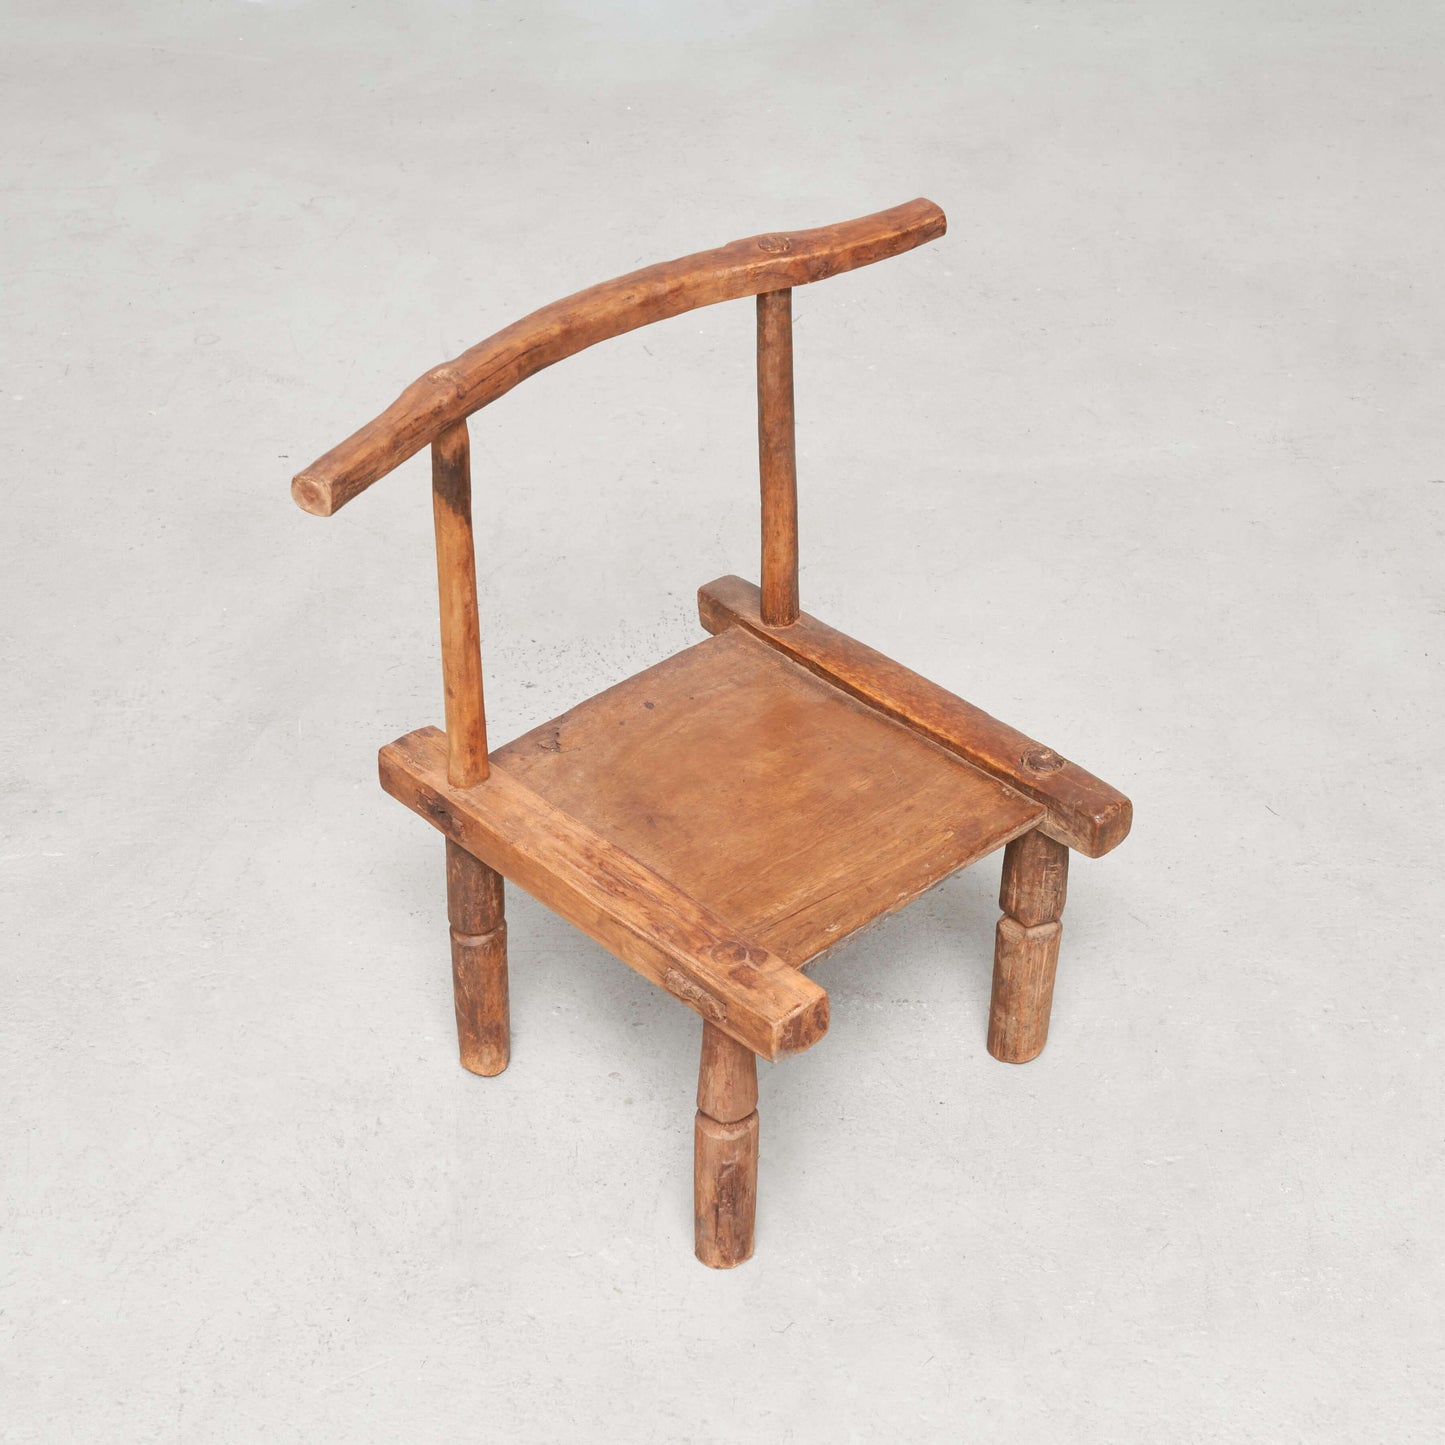 Chaise "Chaise à palabre", Sénoufo, ca.